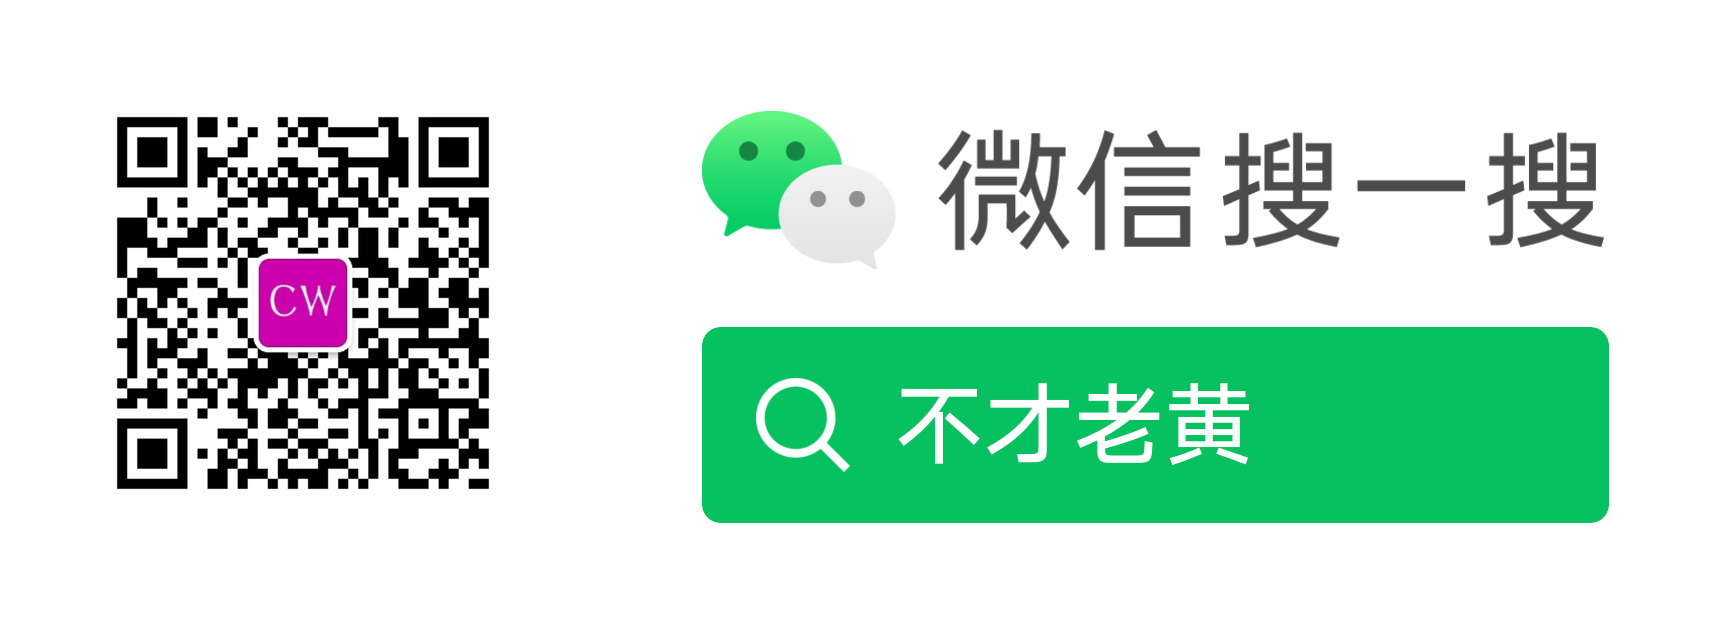 Включи на китайском 11. 微光app.